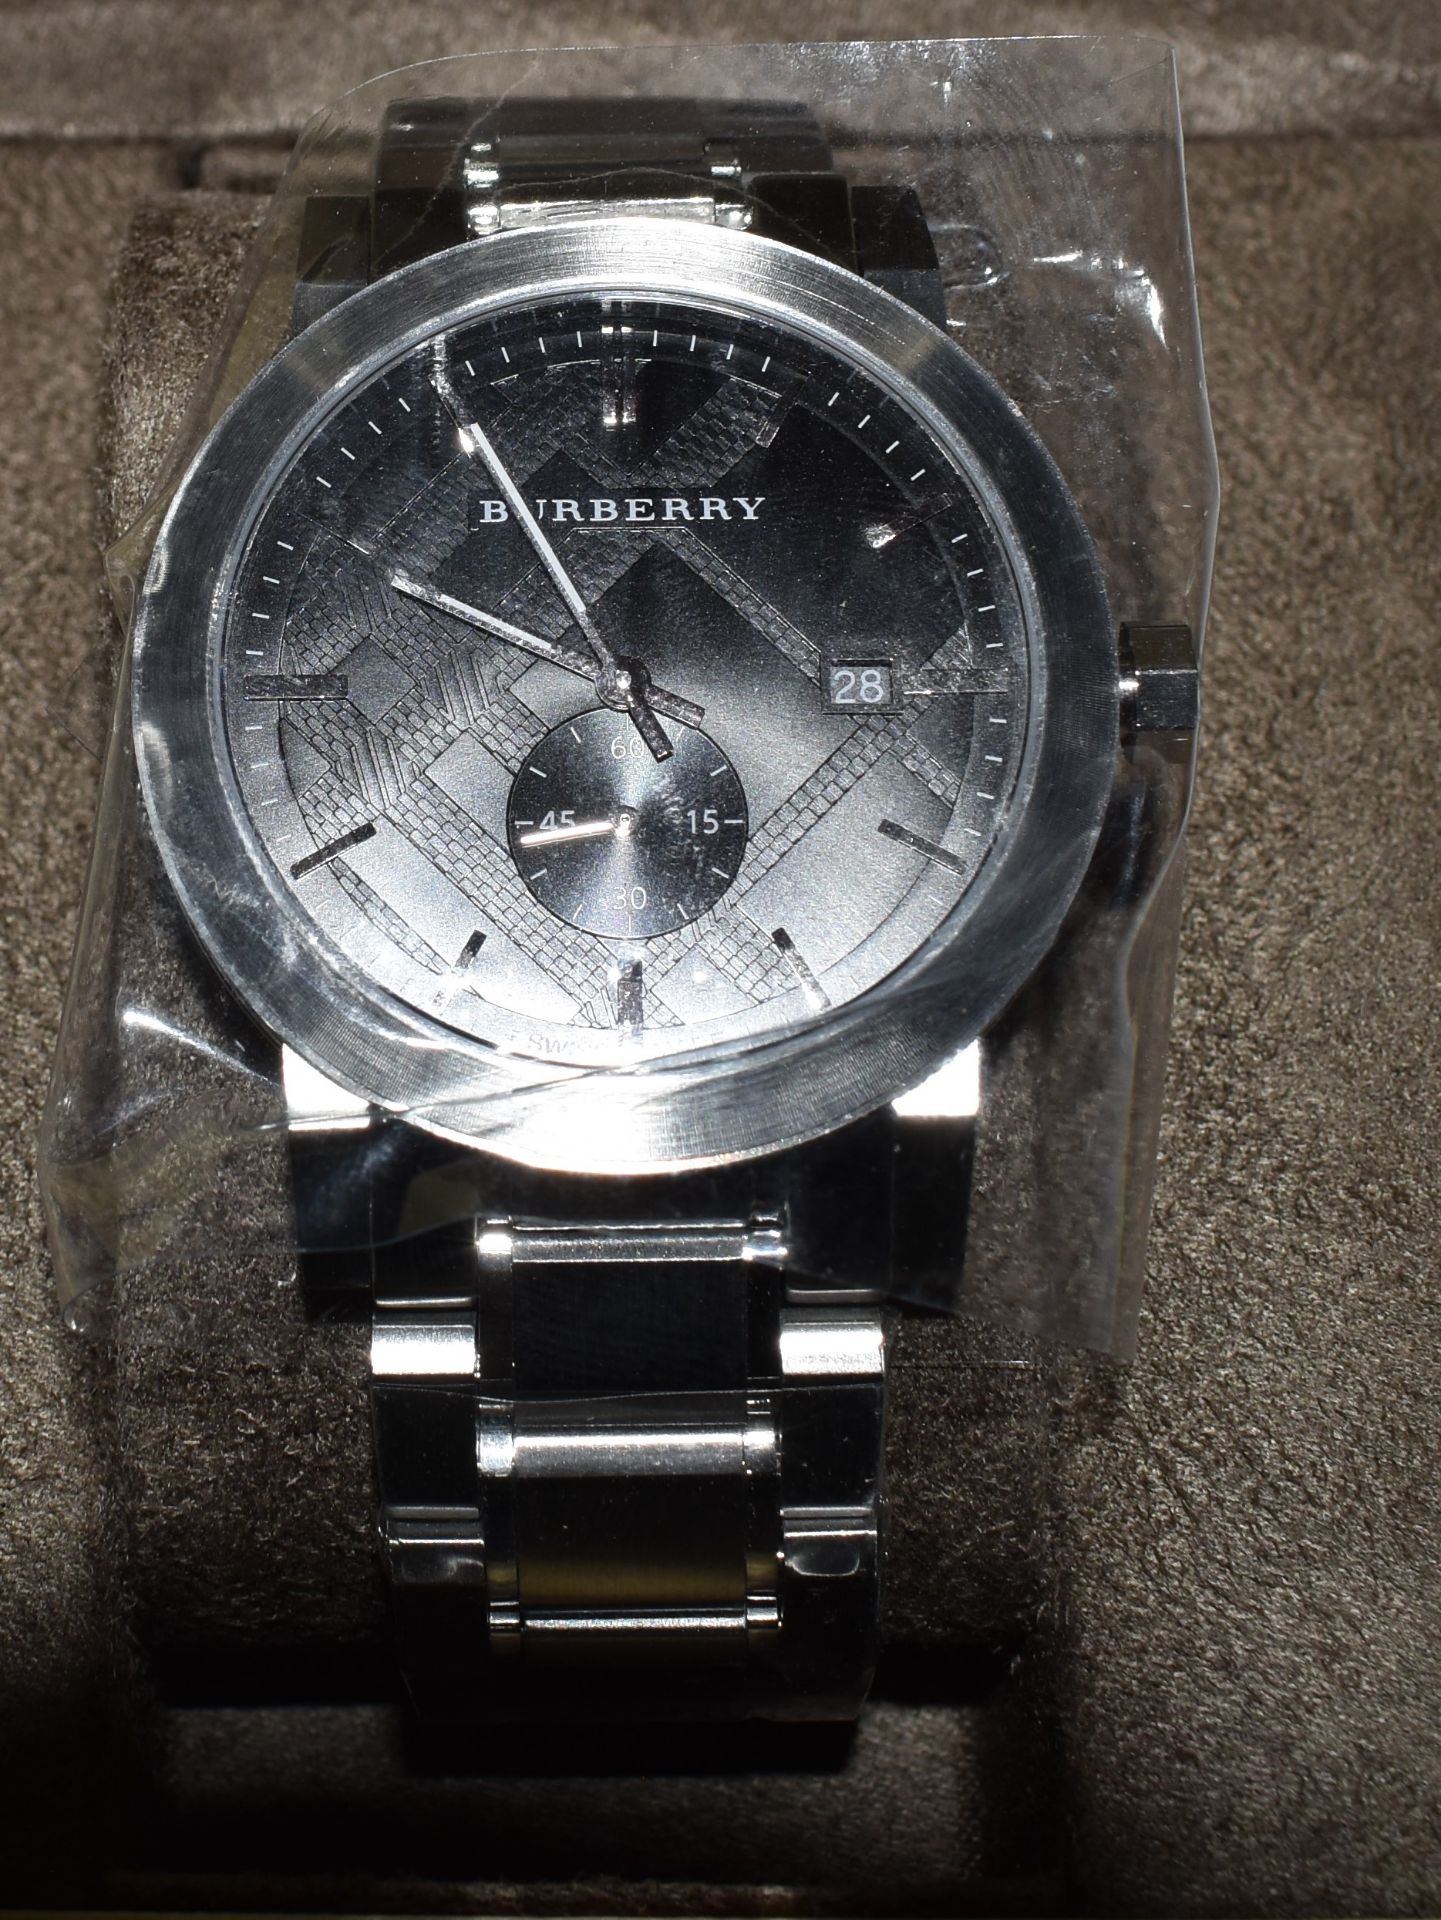 Burberry Men's Watch BU9901 - Image 3 of 3